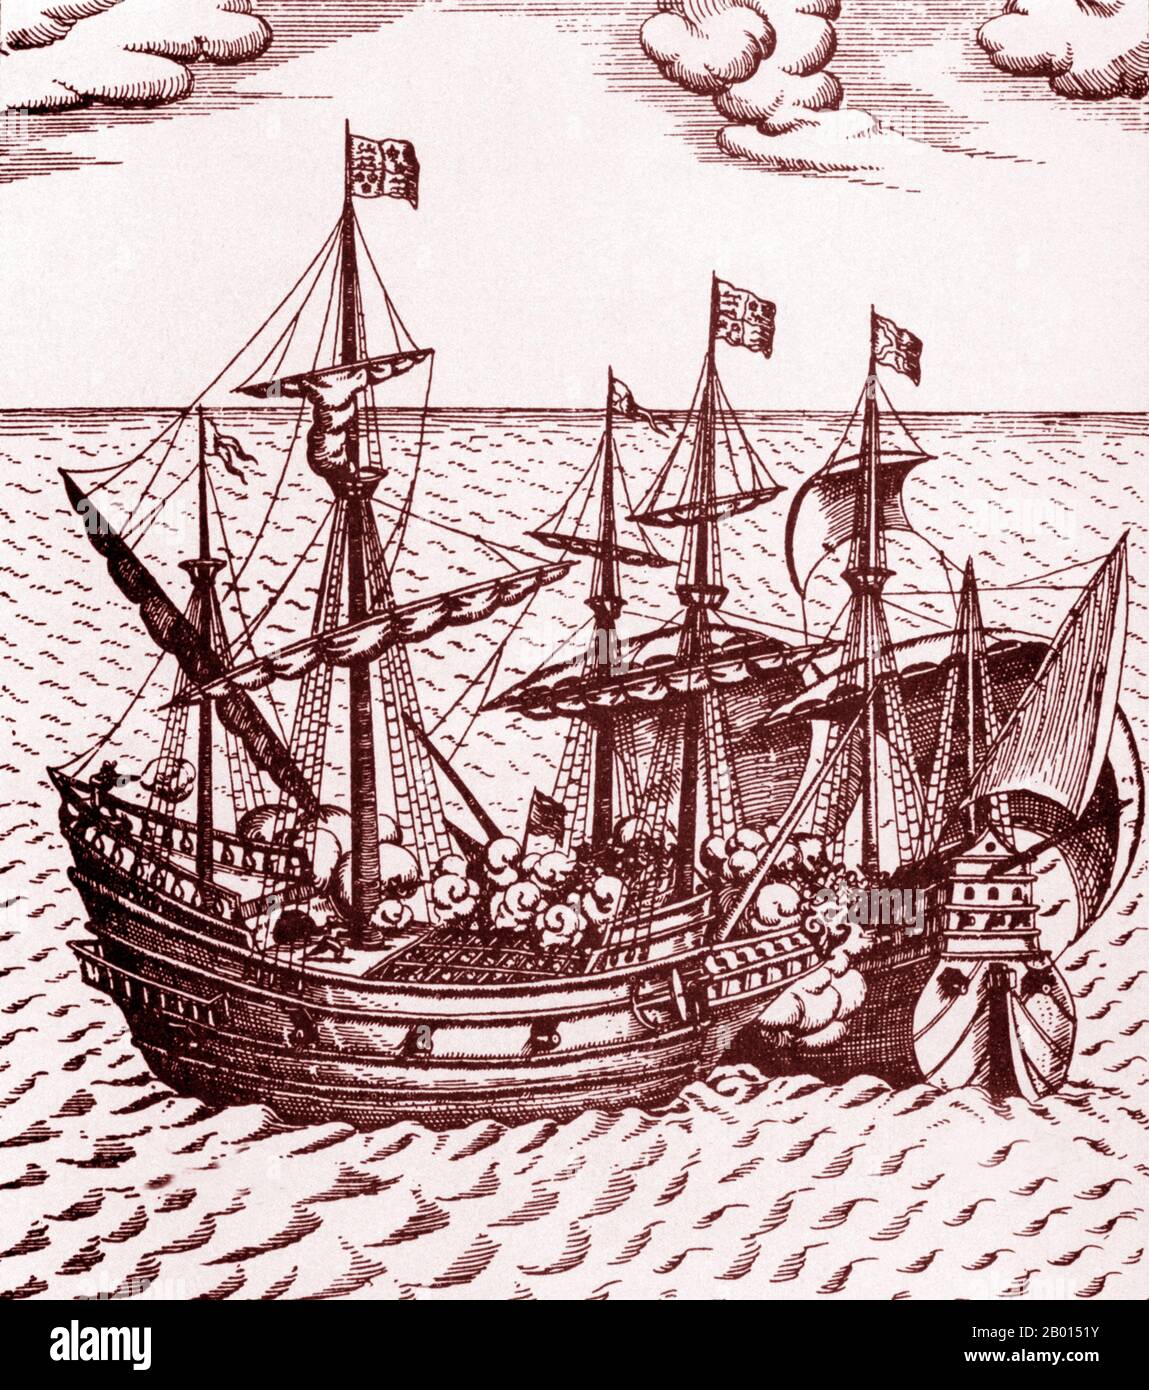 Angleterre: 'La capture du Cacafuego, le navire-Trésor espagnol, par Sir Francis Drake'. Gravure de Friedrich van Hulsen (1580-1665), 1626. Le vice-amiral Sir Francis Drake (1540-1596) était un capitaine de mer anglais, un corsaire, un navigateur, un castor, un pirate renommé, Et un politicien de l'ère élisabéthaine. Elizabeth I, d'Angleterre, a décerné à Drake une chevalier en 1581. En 1588, il a été le deuxième commandant de la flotte anglaise contre l'Armada espagnole, subordonné seulement à Charles Howard et à la Reine elle-même. Il est mort de dysenterie en janvier 1596 après avoir attaqué sans succès San Juan, Porto Rico. Banque D'Images